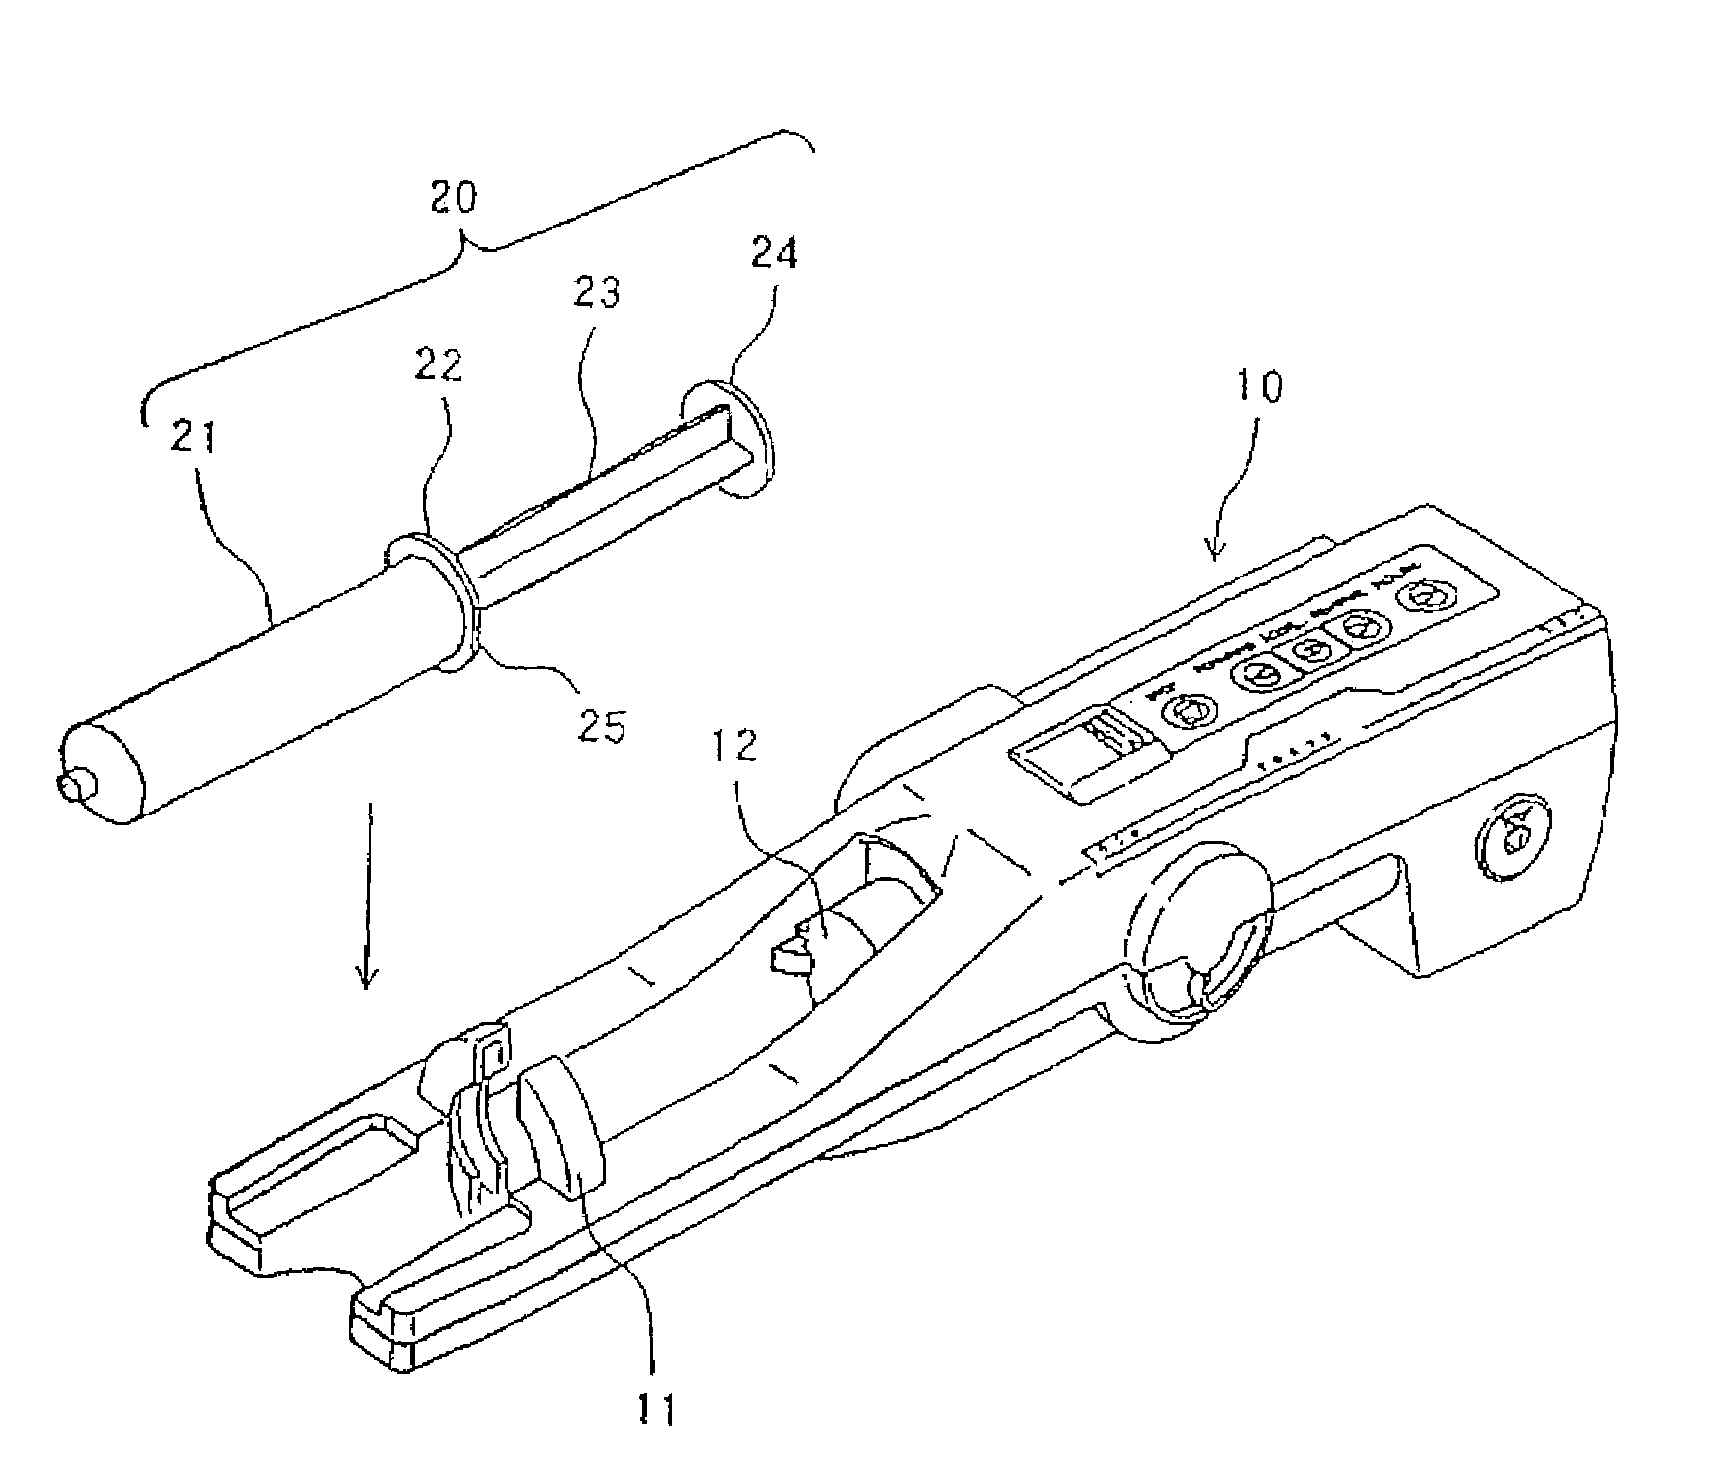 Syringe barrel and cylinder holder